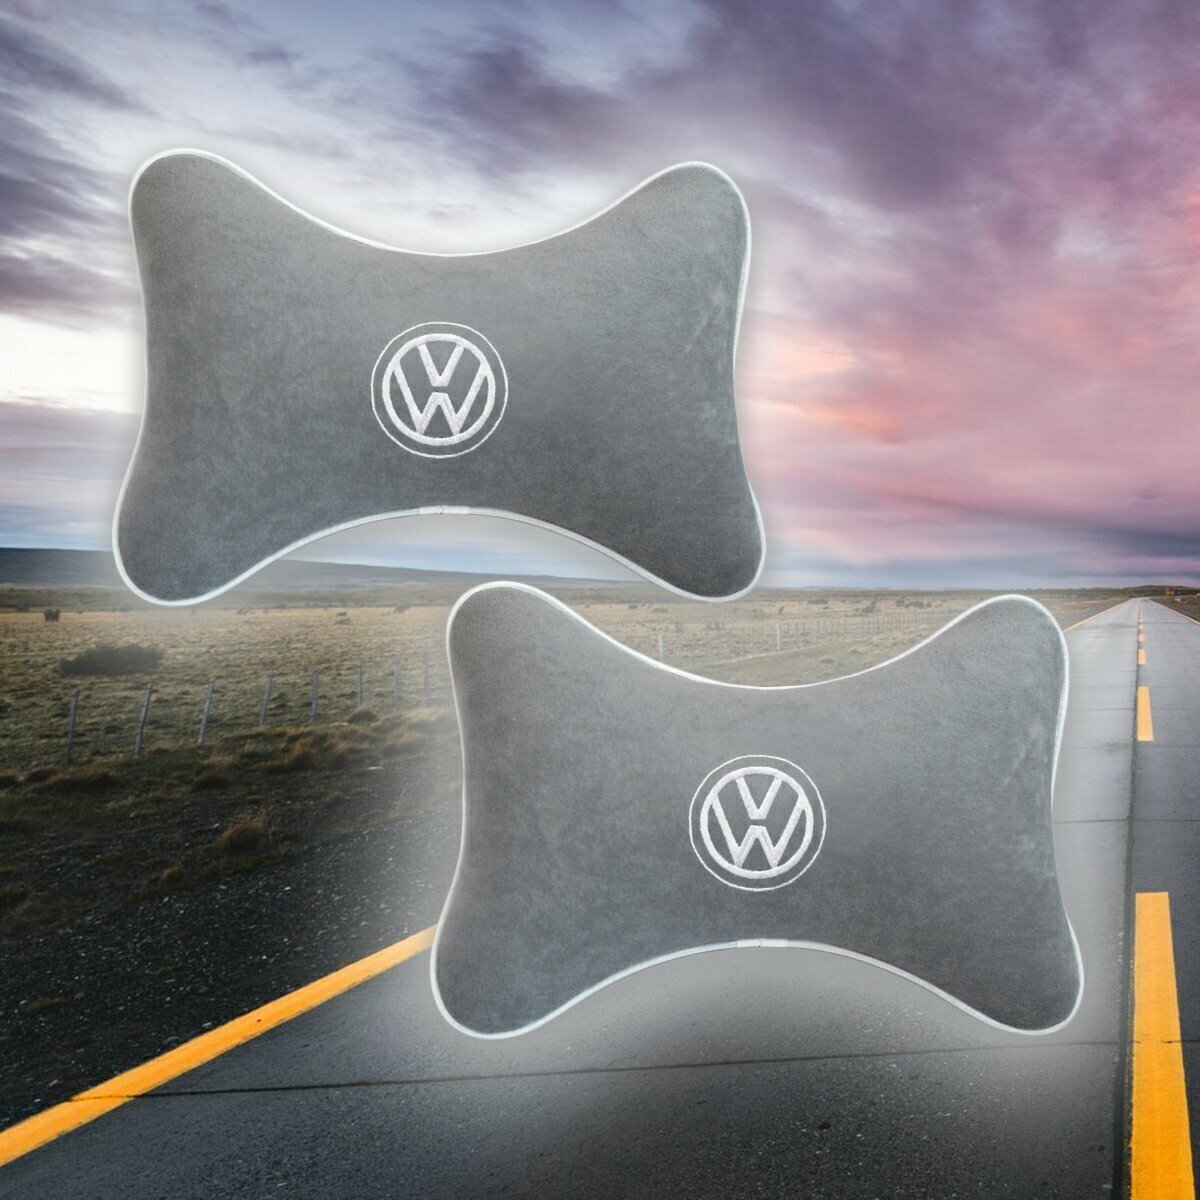 Комплект автомобильных подушек под шею на подголовник из серого велюра и вышивкой для Volkswagen (фольцваген) (2 подушки)